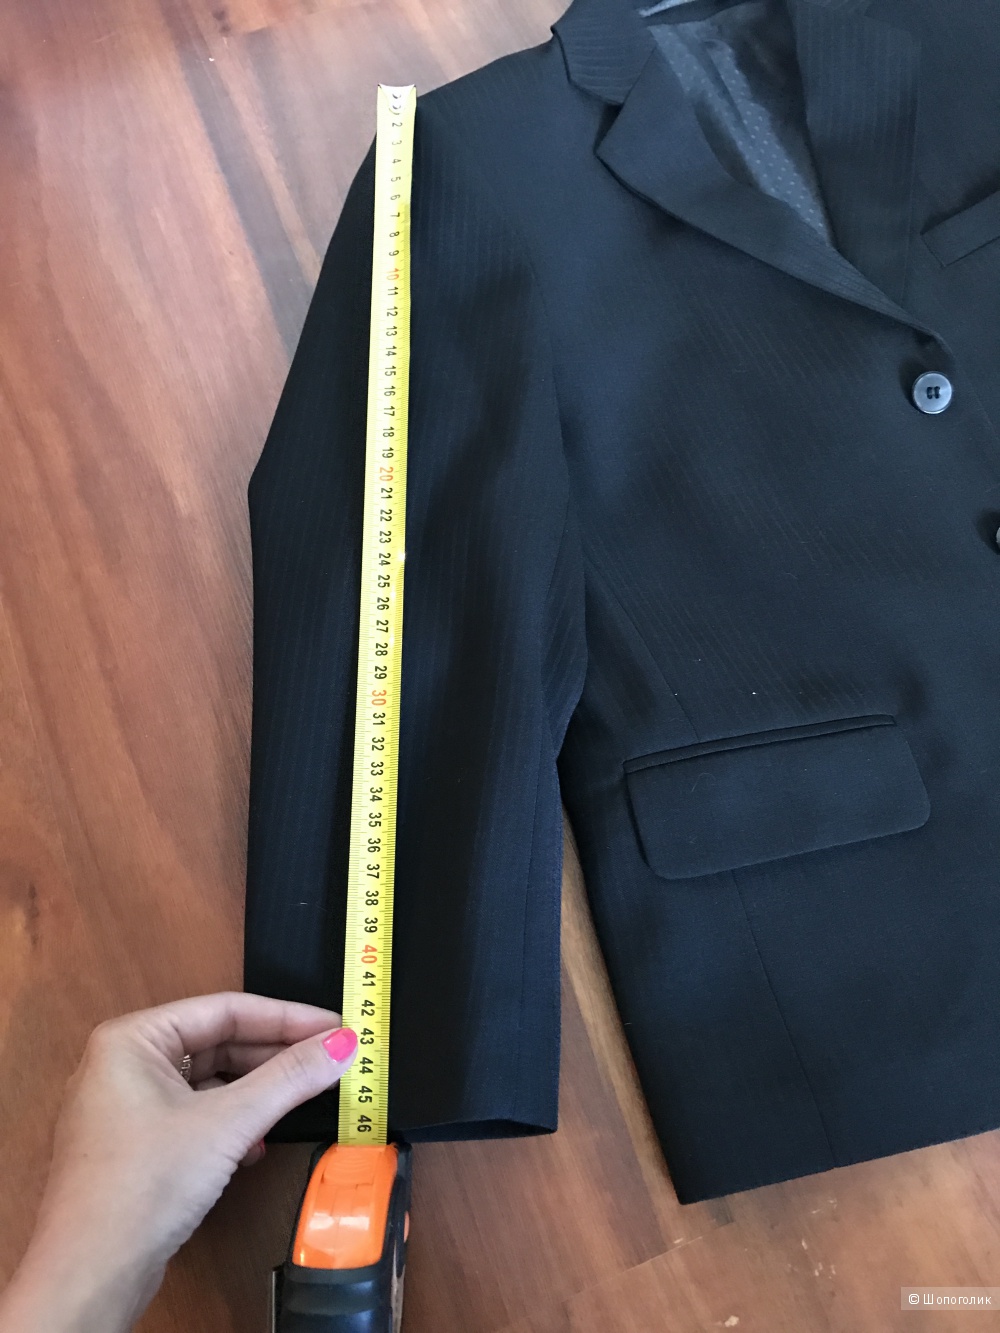 Школьный брючный костюм чёрный в тонкую полоску размер 140